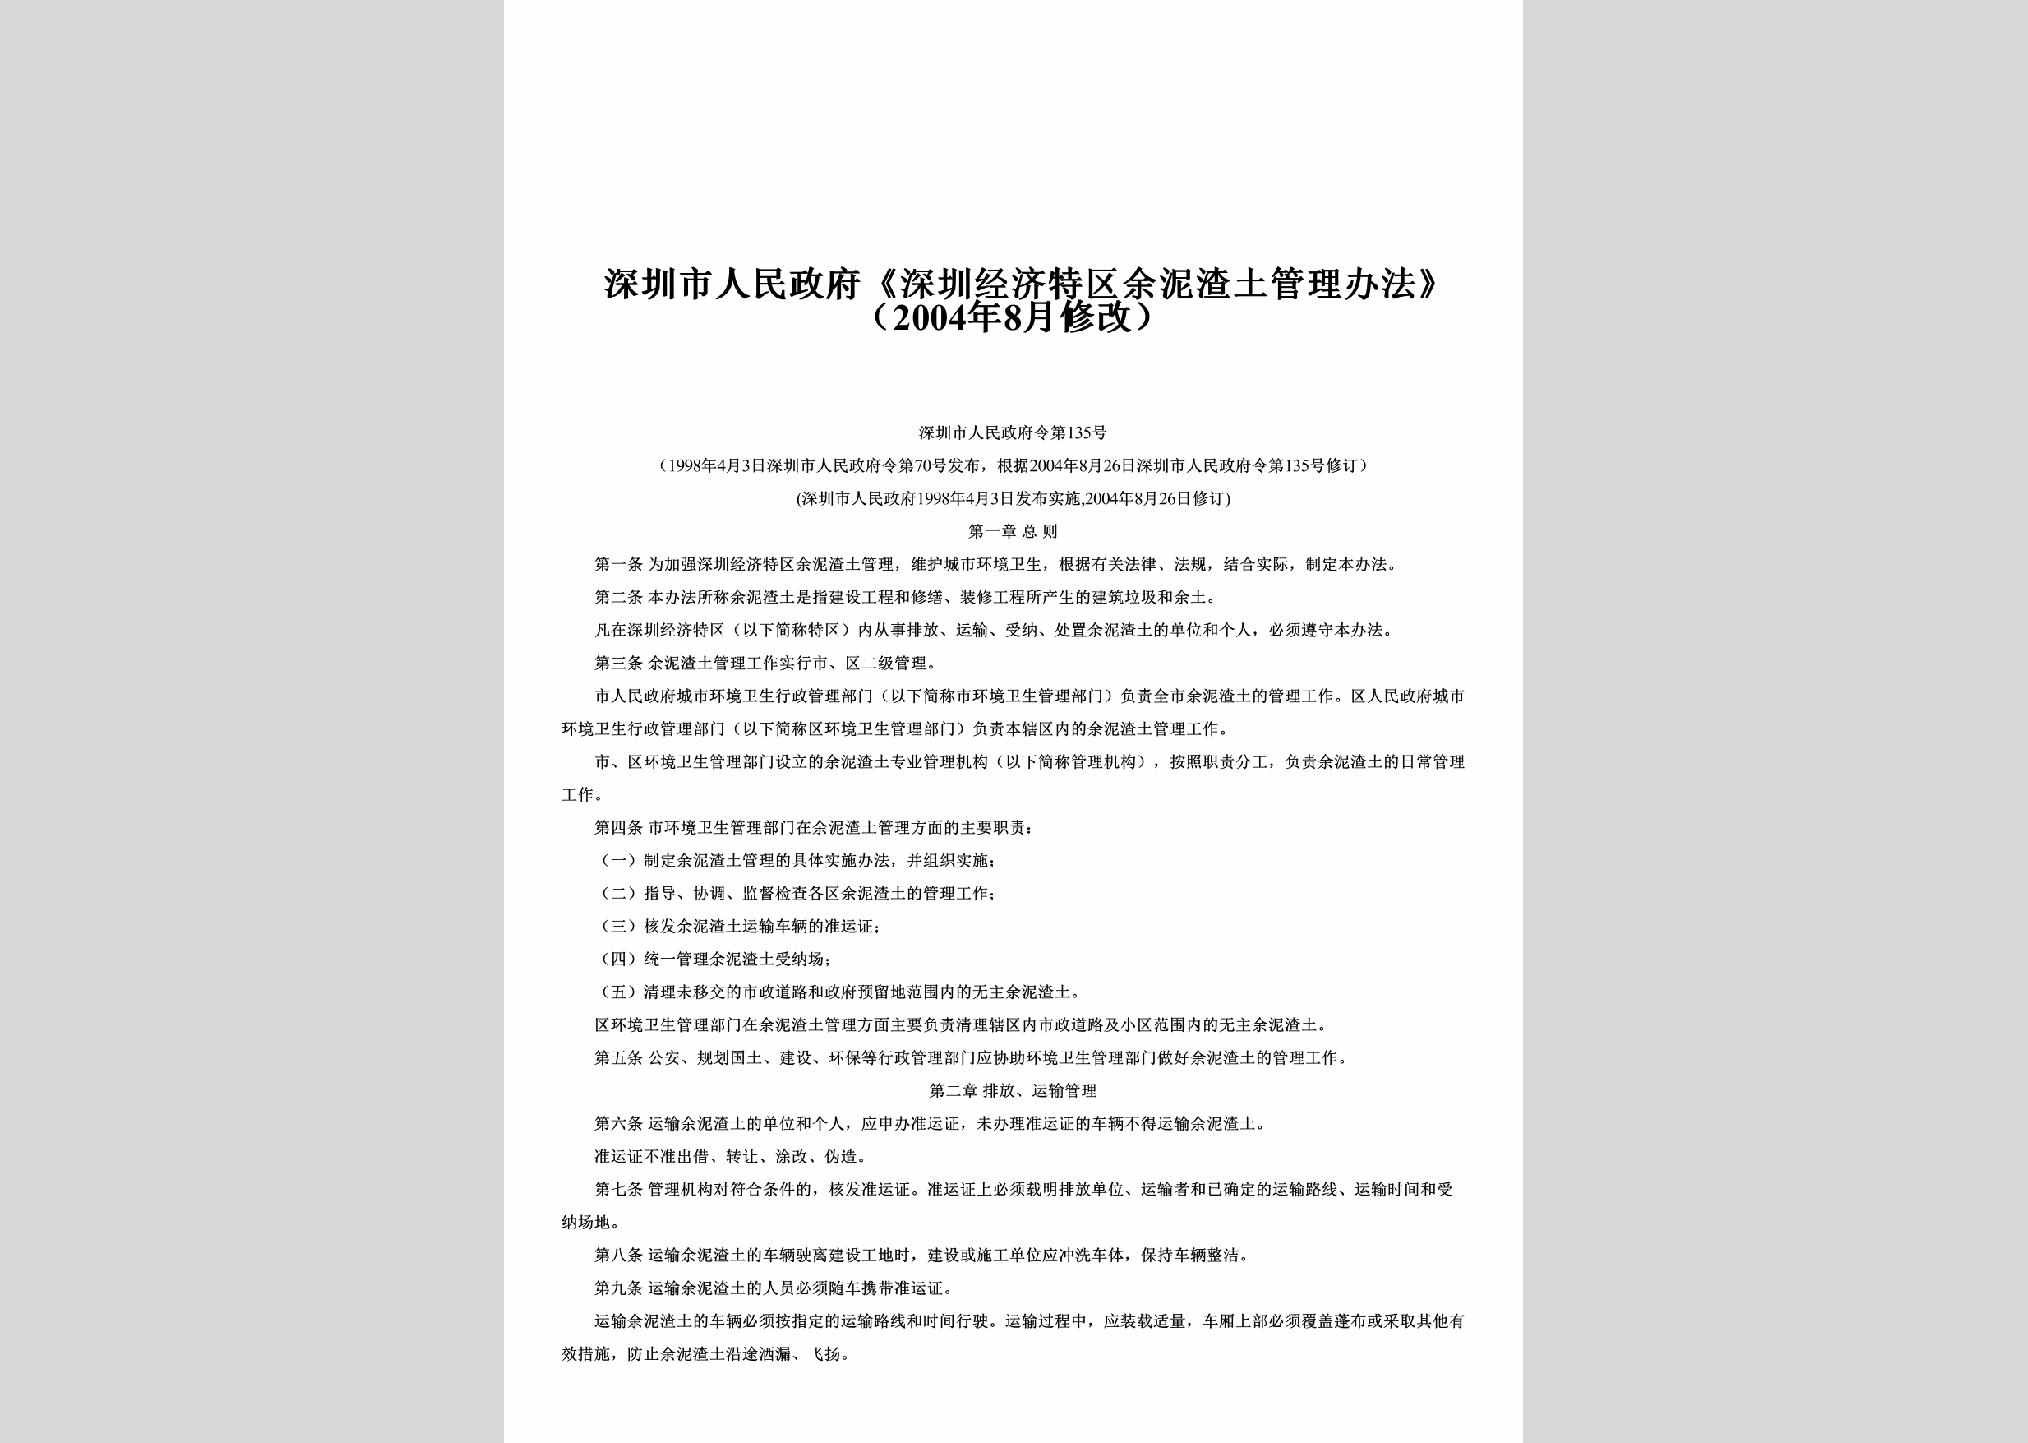 GDZFL-2004-135：《深圳经济特区余泥渣土管理办法》（2004年8月修改）